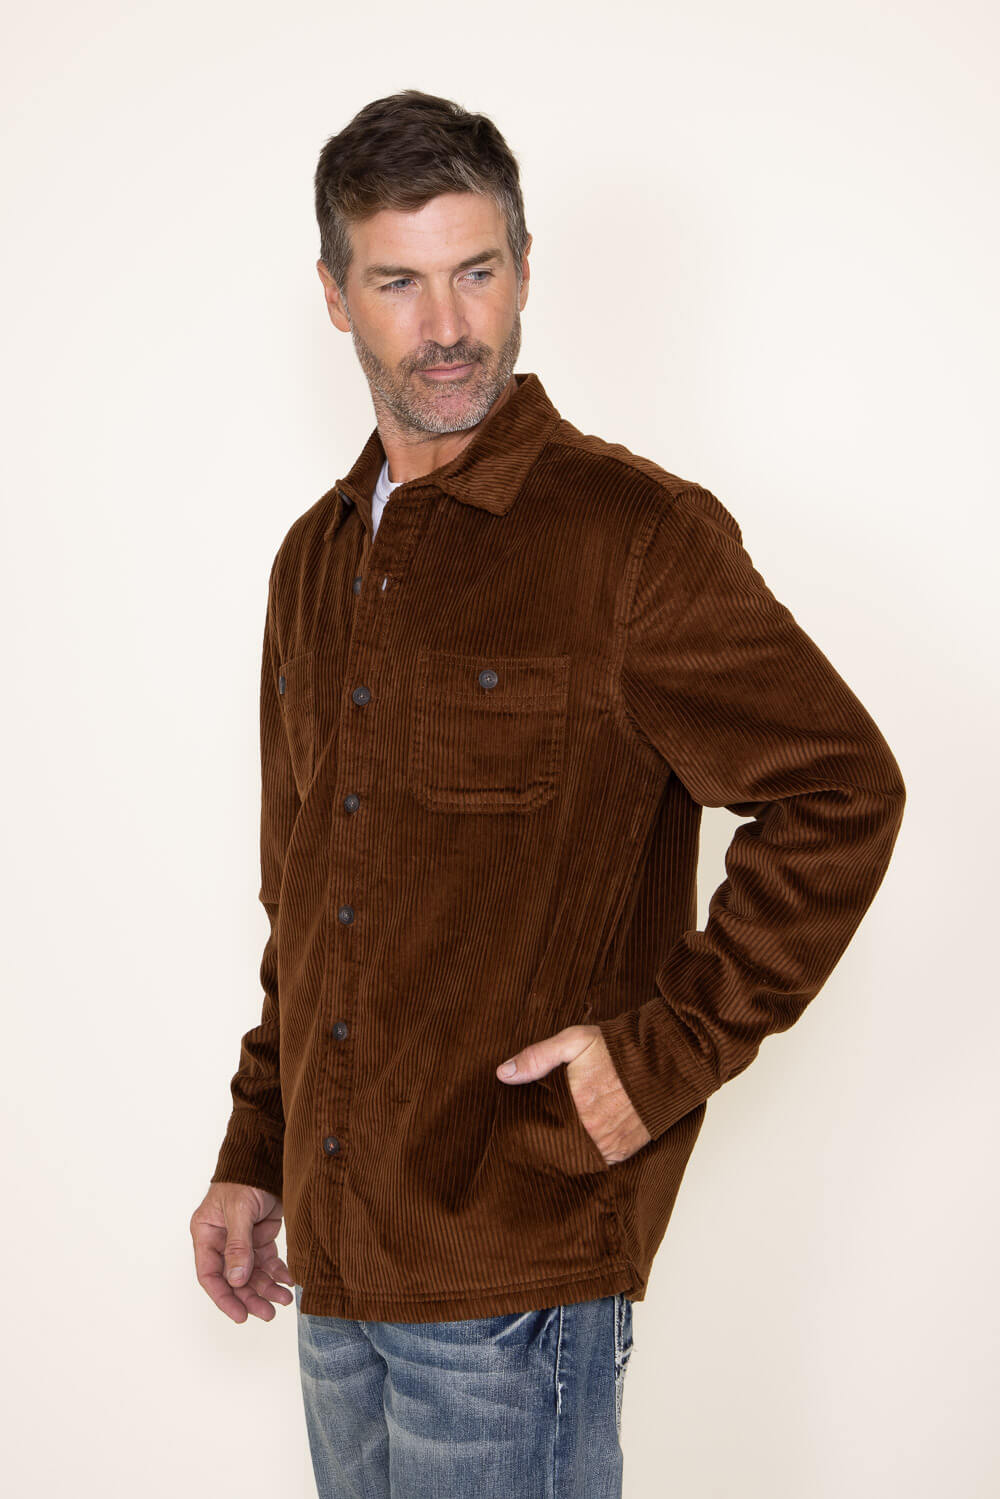 Weatherproof Vintage Corduroy Shirt Jacket for Men in Brown | F2388040 ...